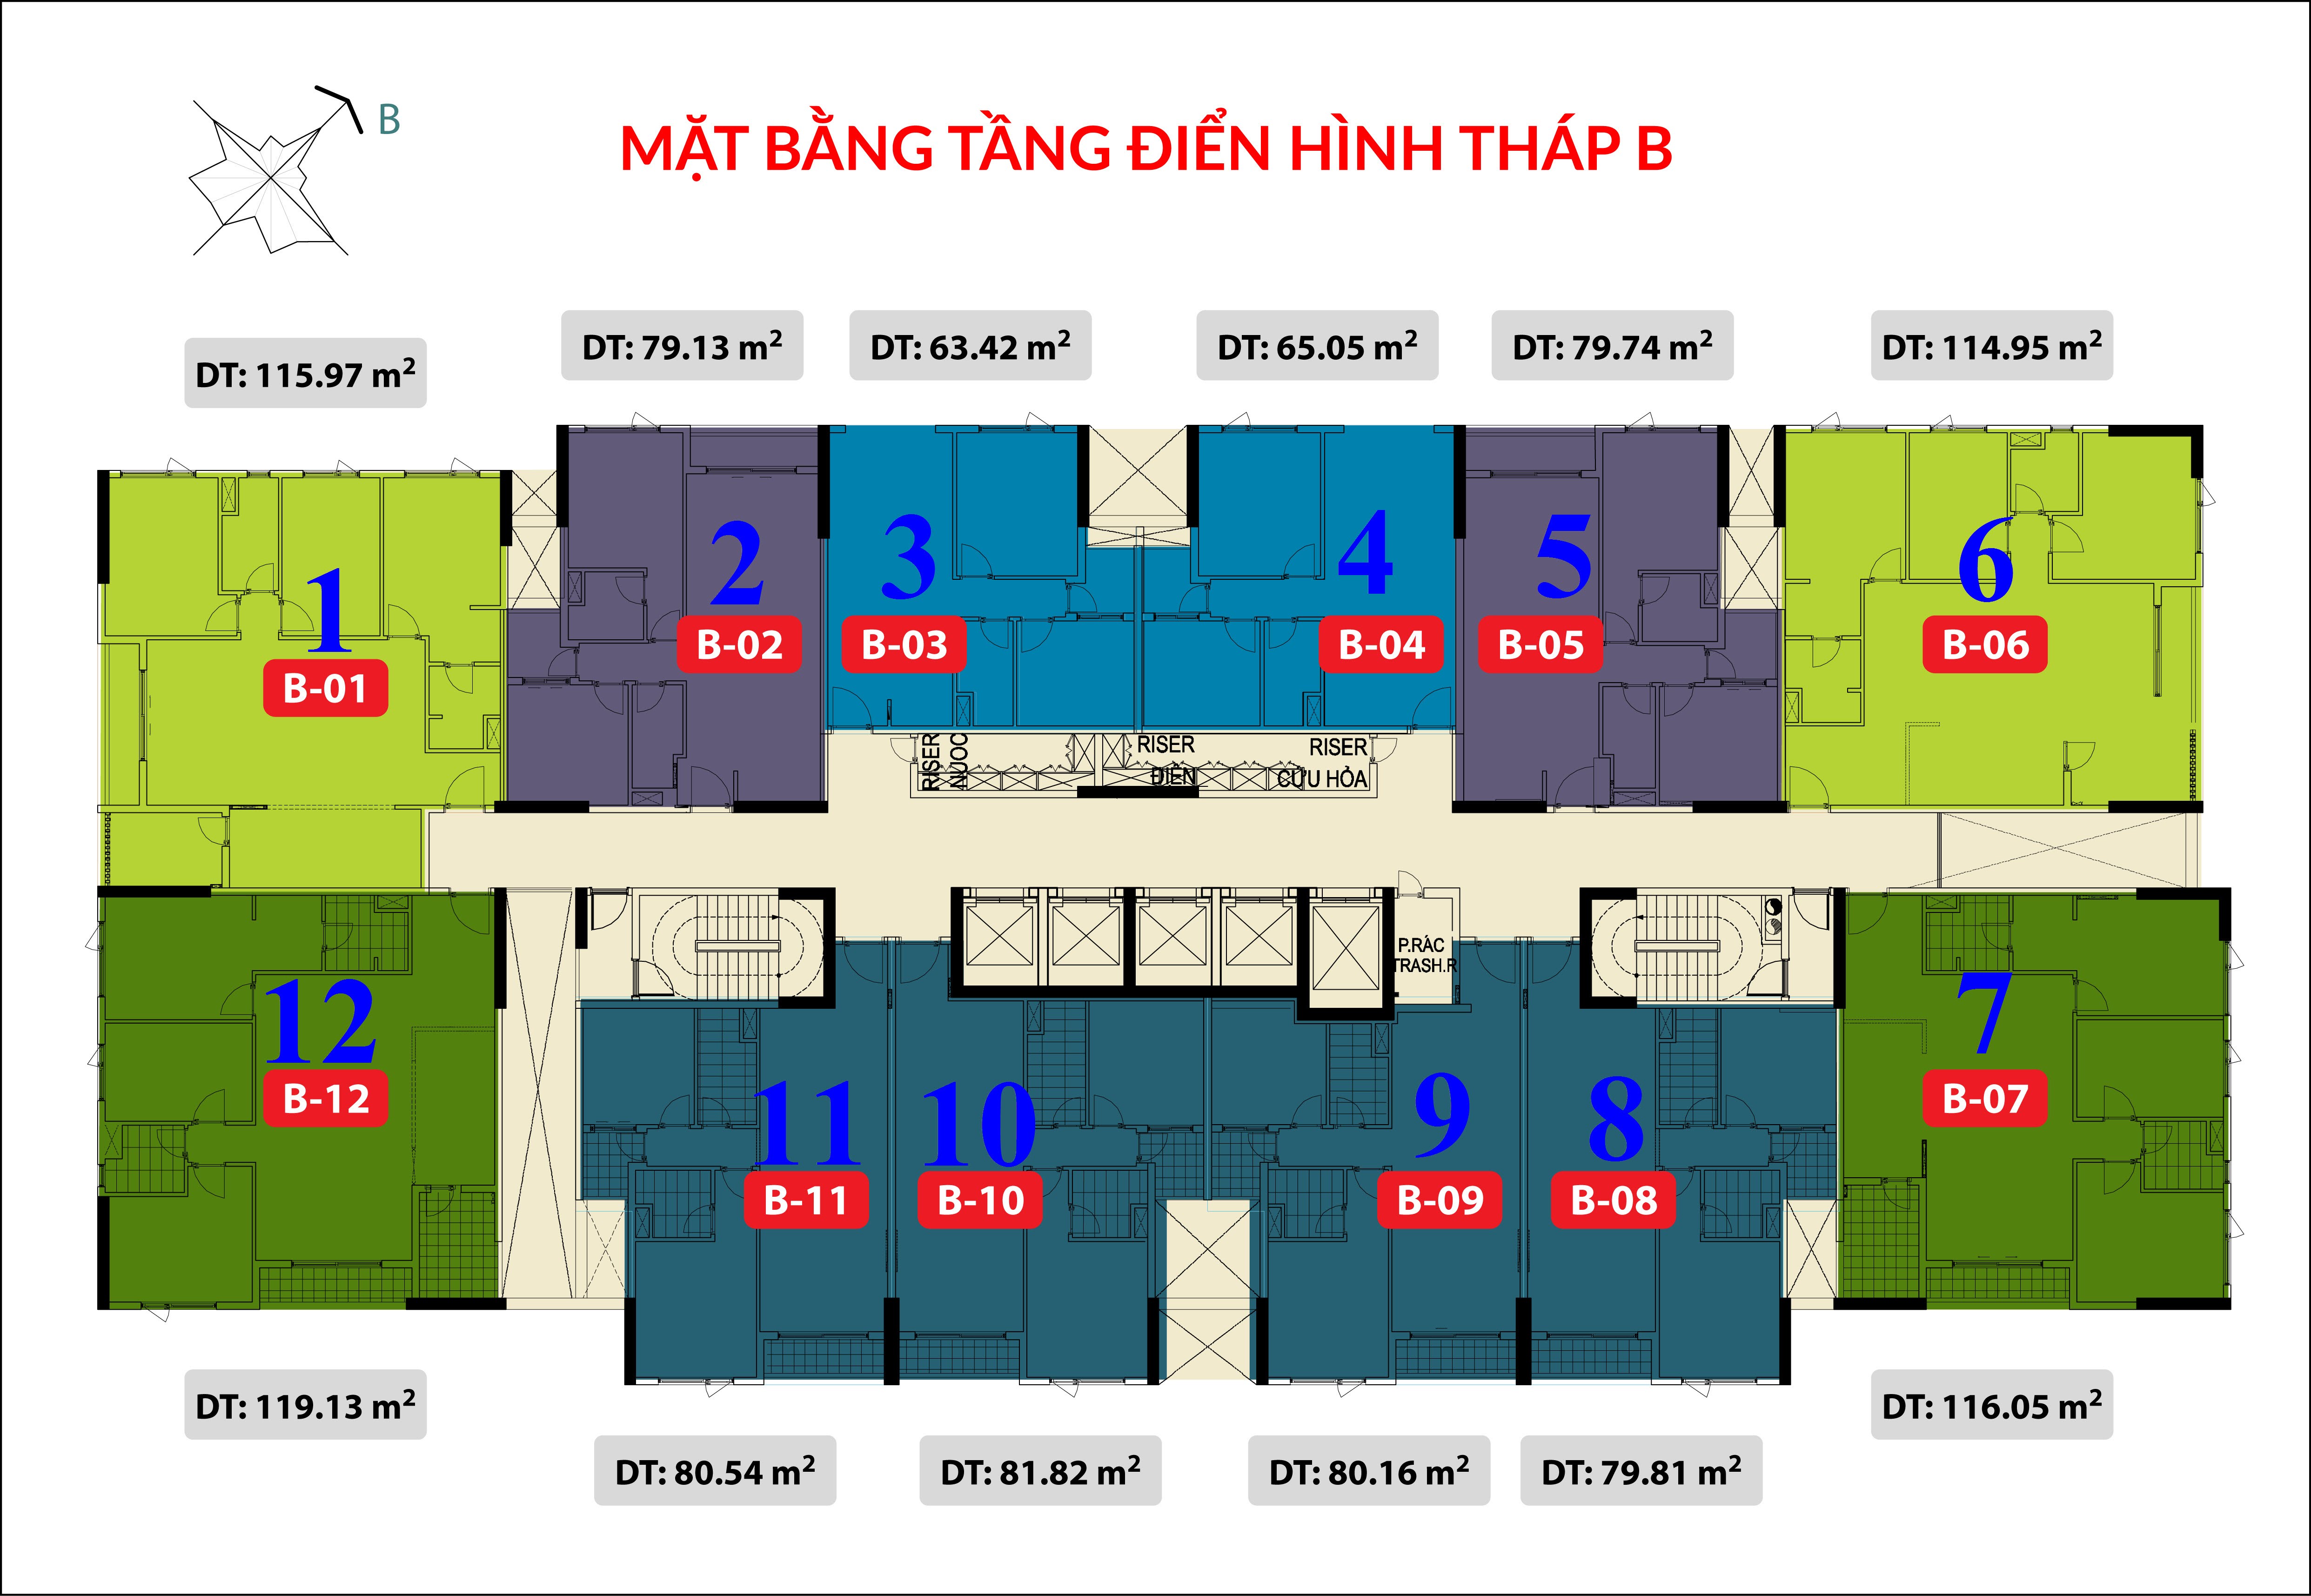 layout-mat-bang-tang-dien-hinh-thap-B-the-gold-view